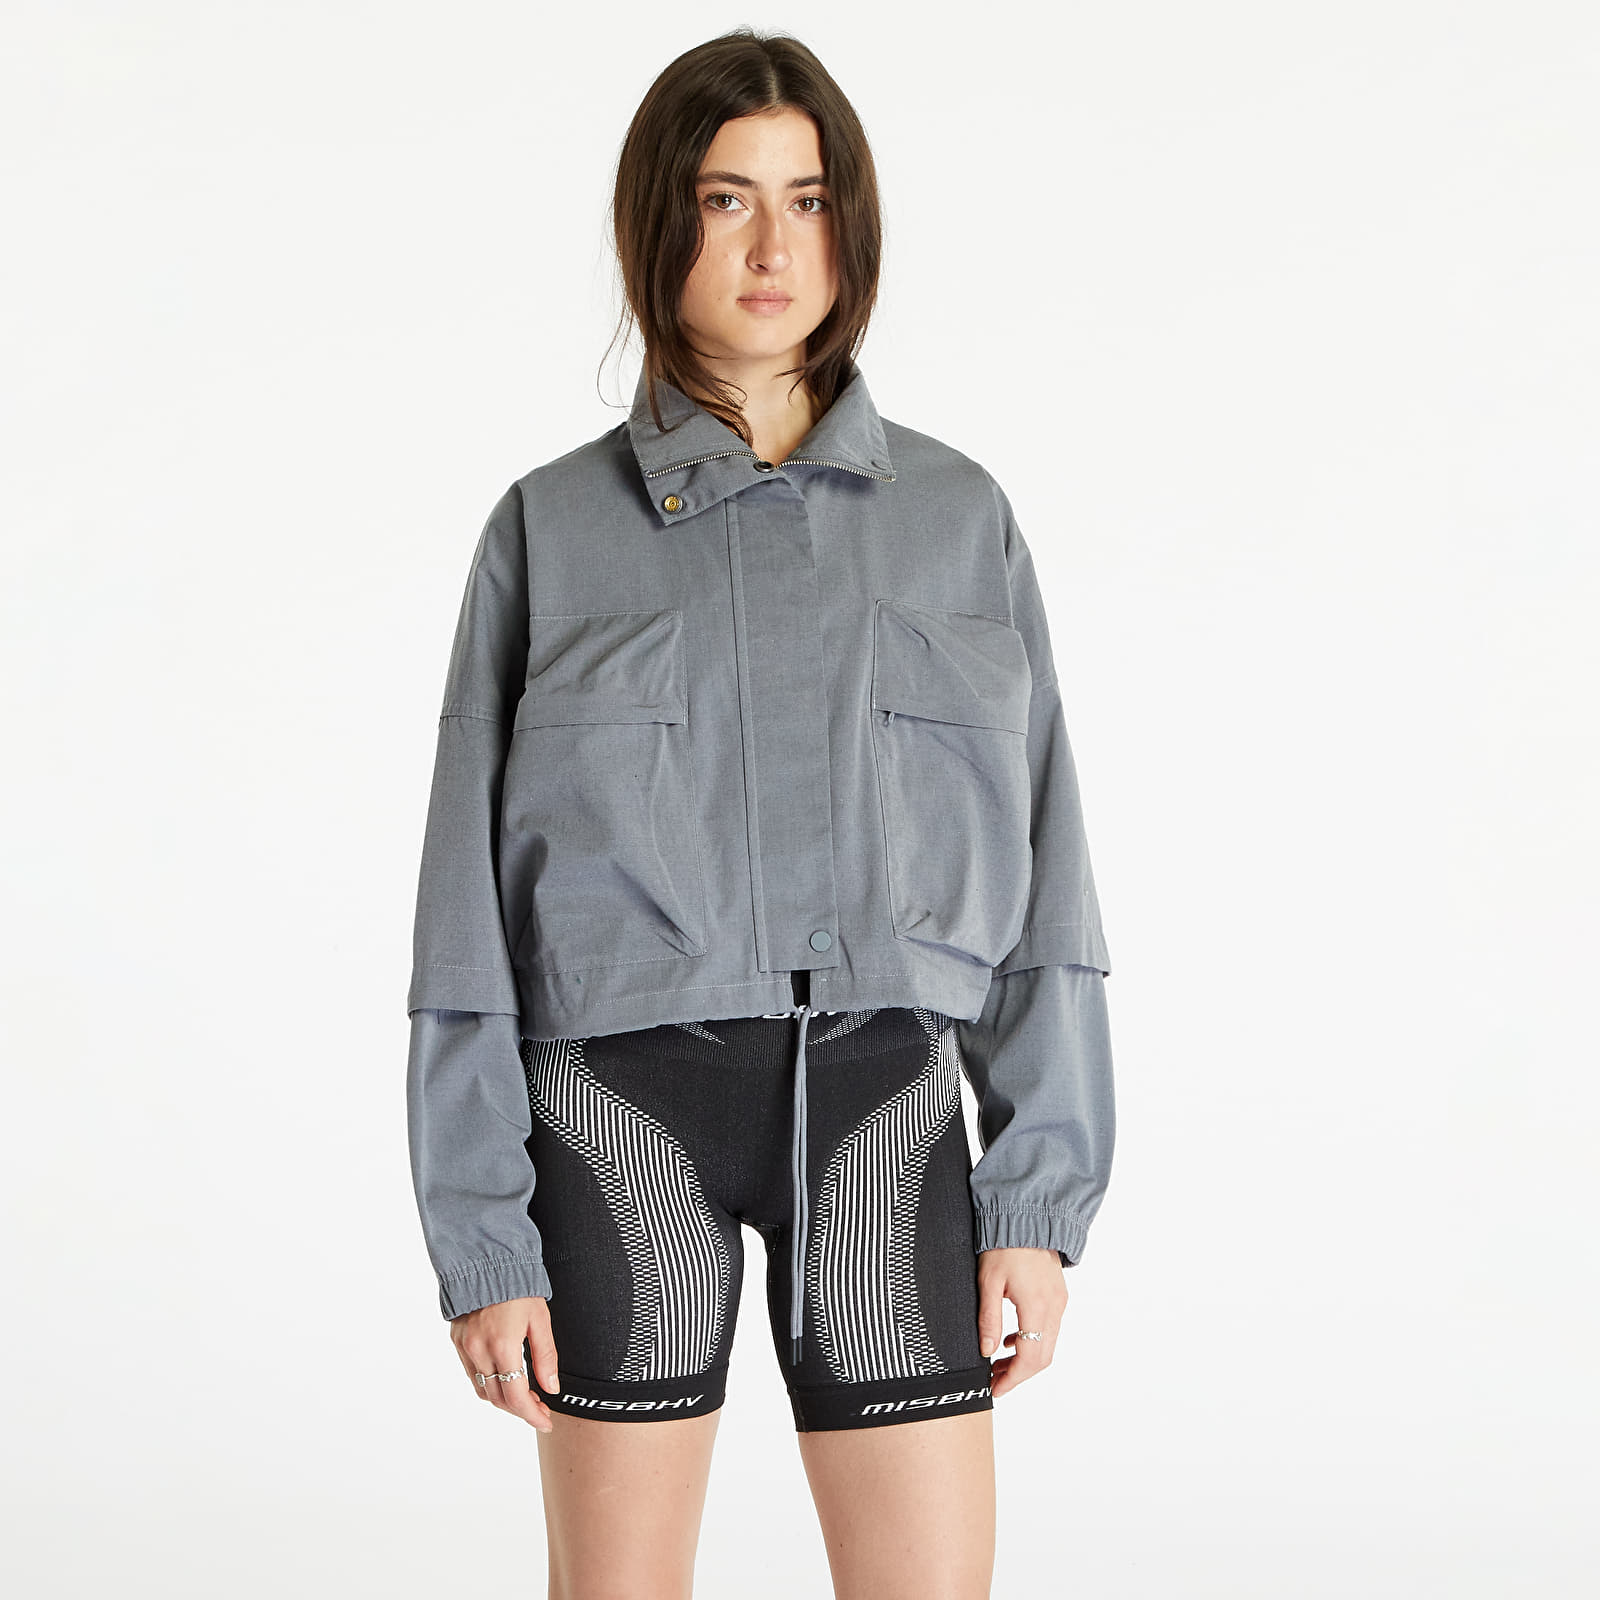 Vestes Nike Sportswear Women's Ripstop Jacket Grey Heather/ Cool Grey